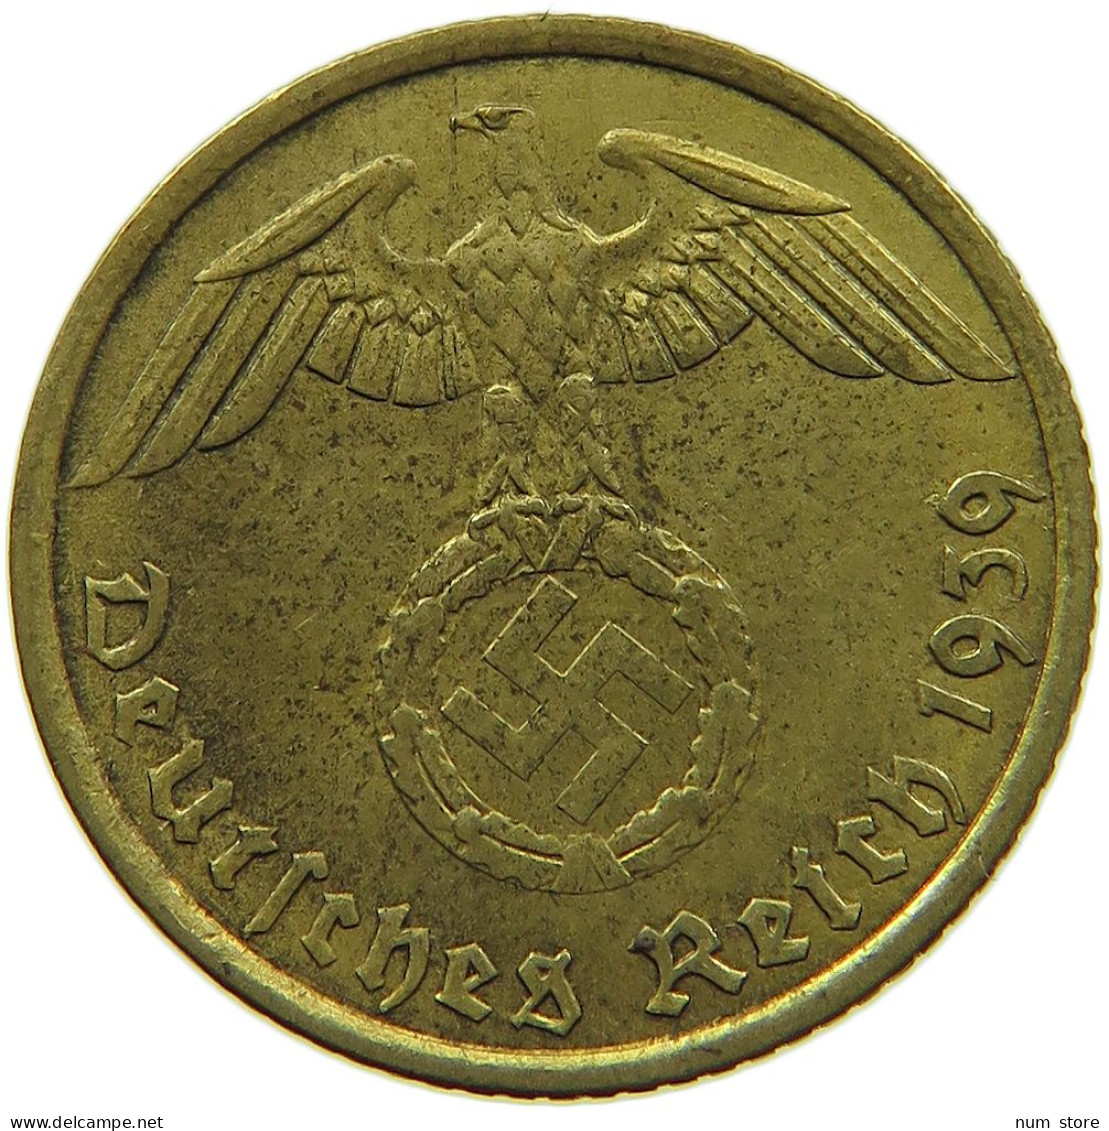 GERMANY 5 REICHSPFENNIG 1939 A #s091 0767 - 5 Reichspfennig